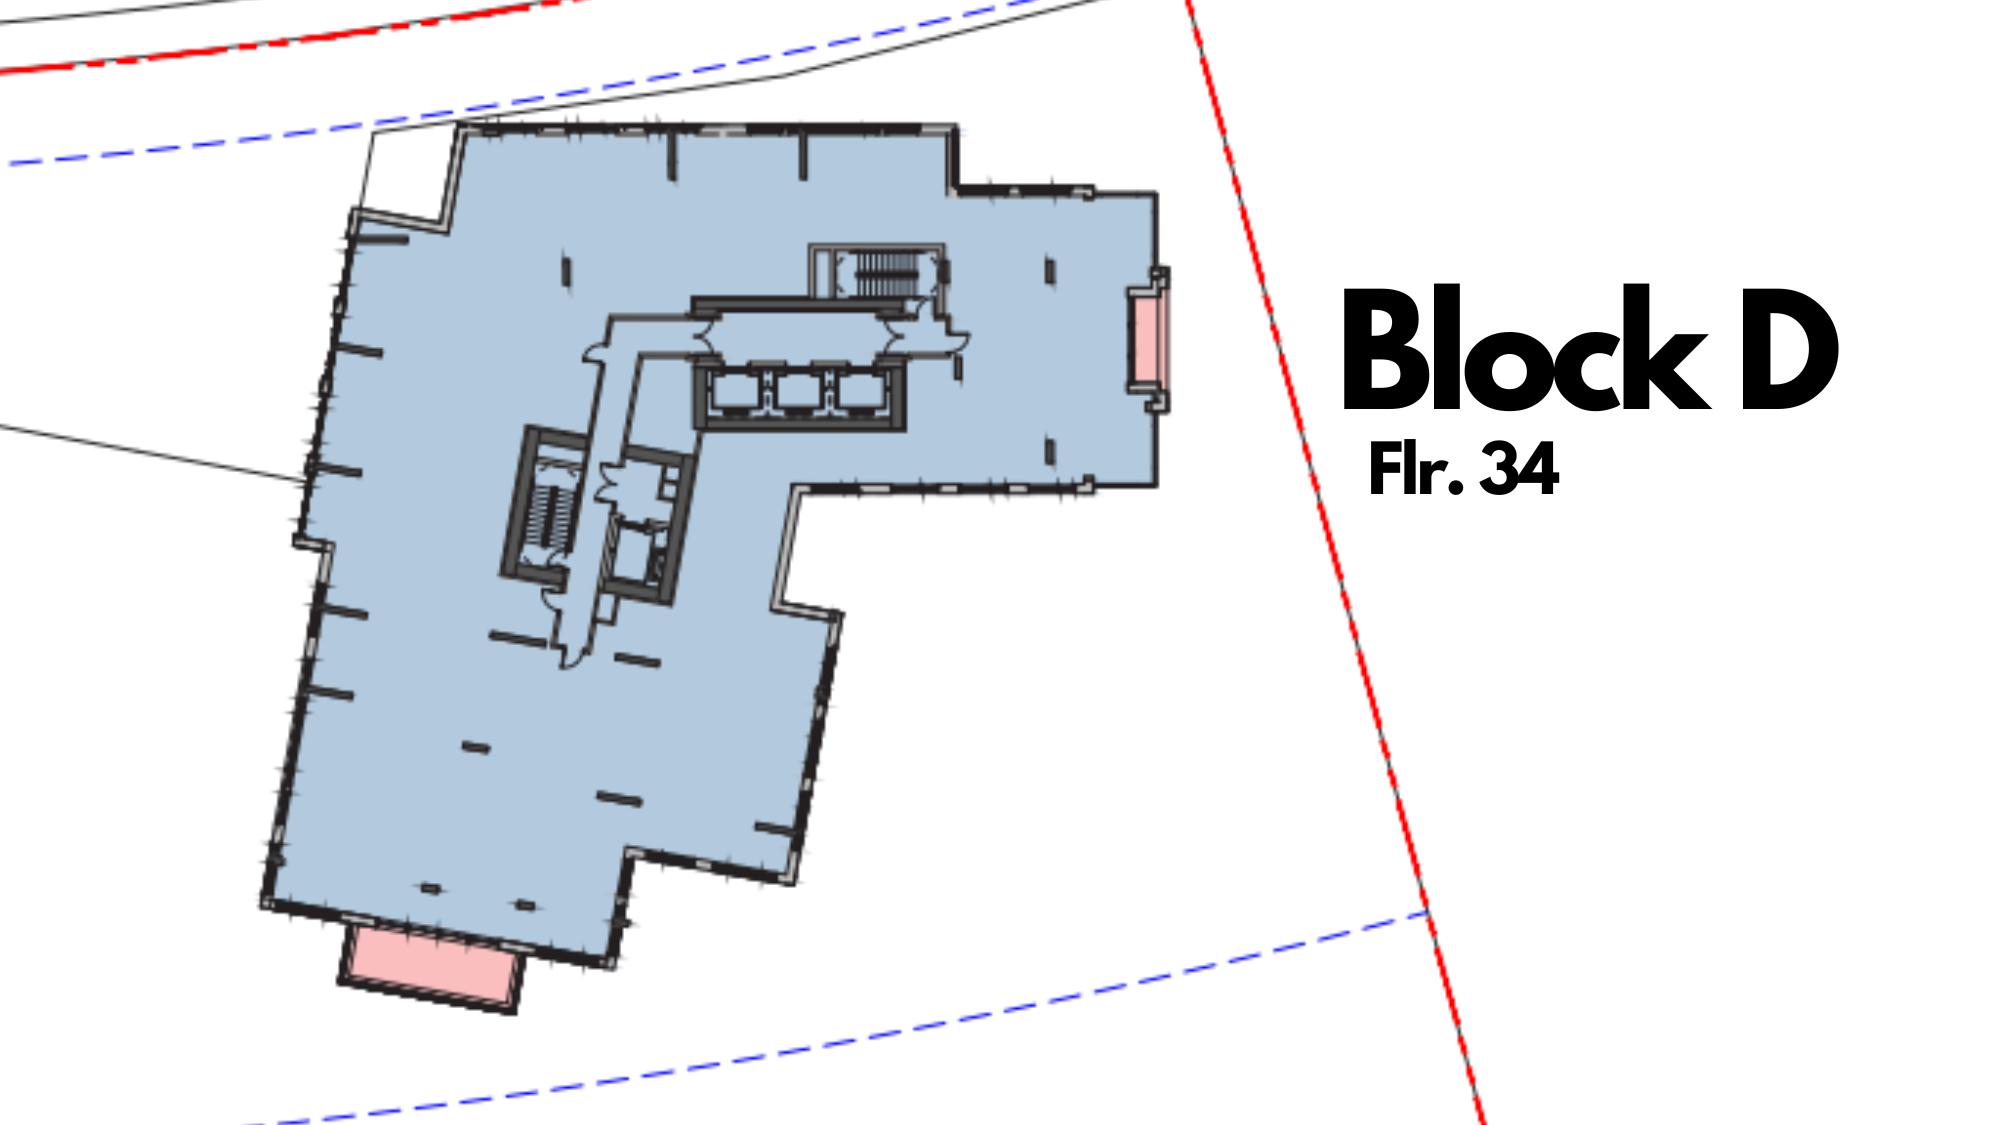 Block D Floor 34